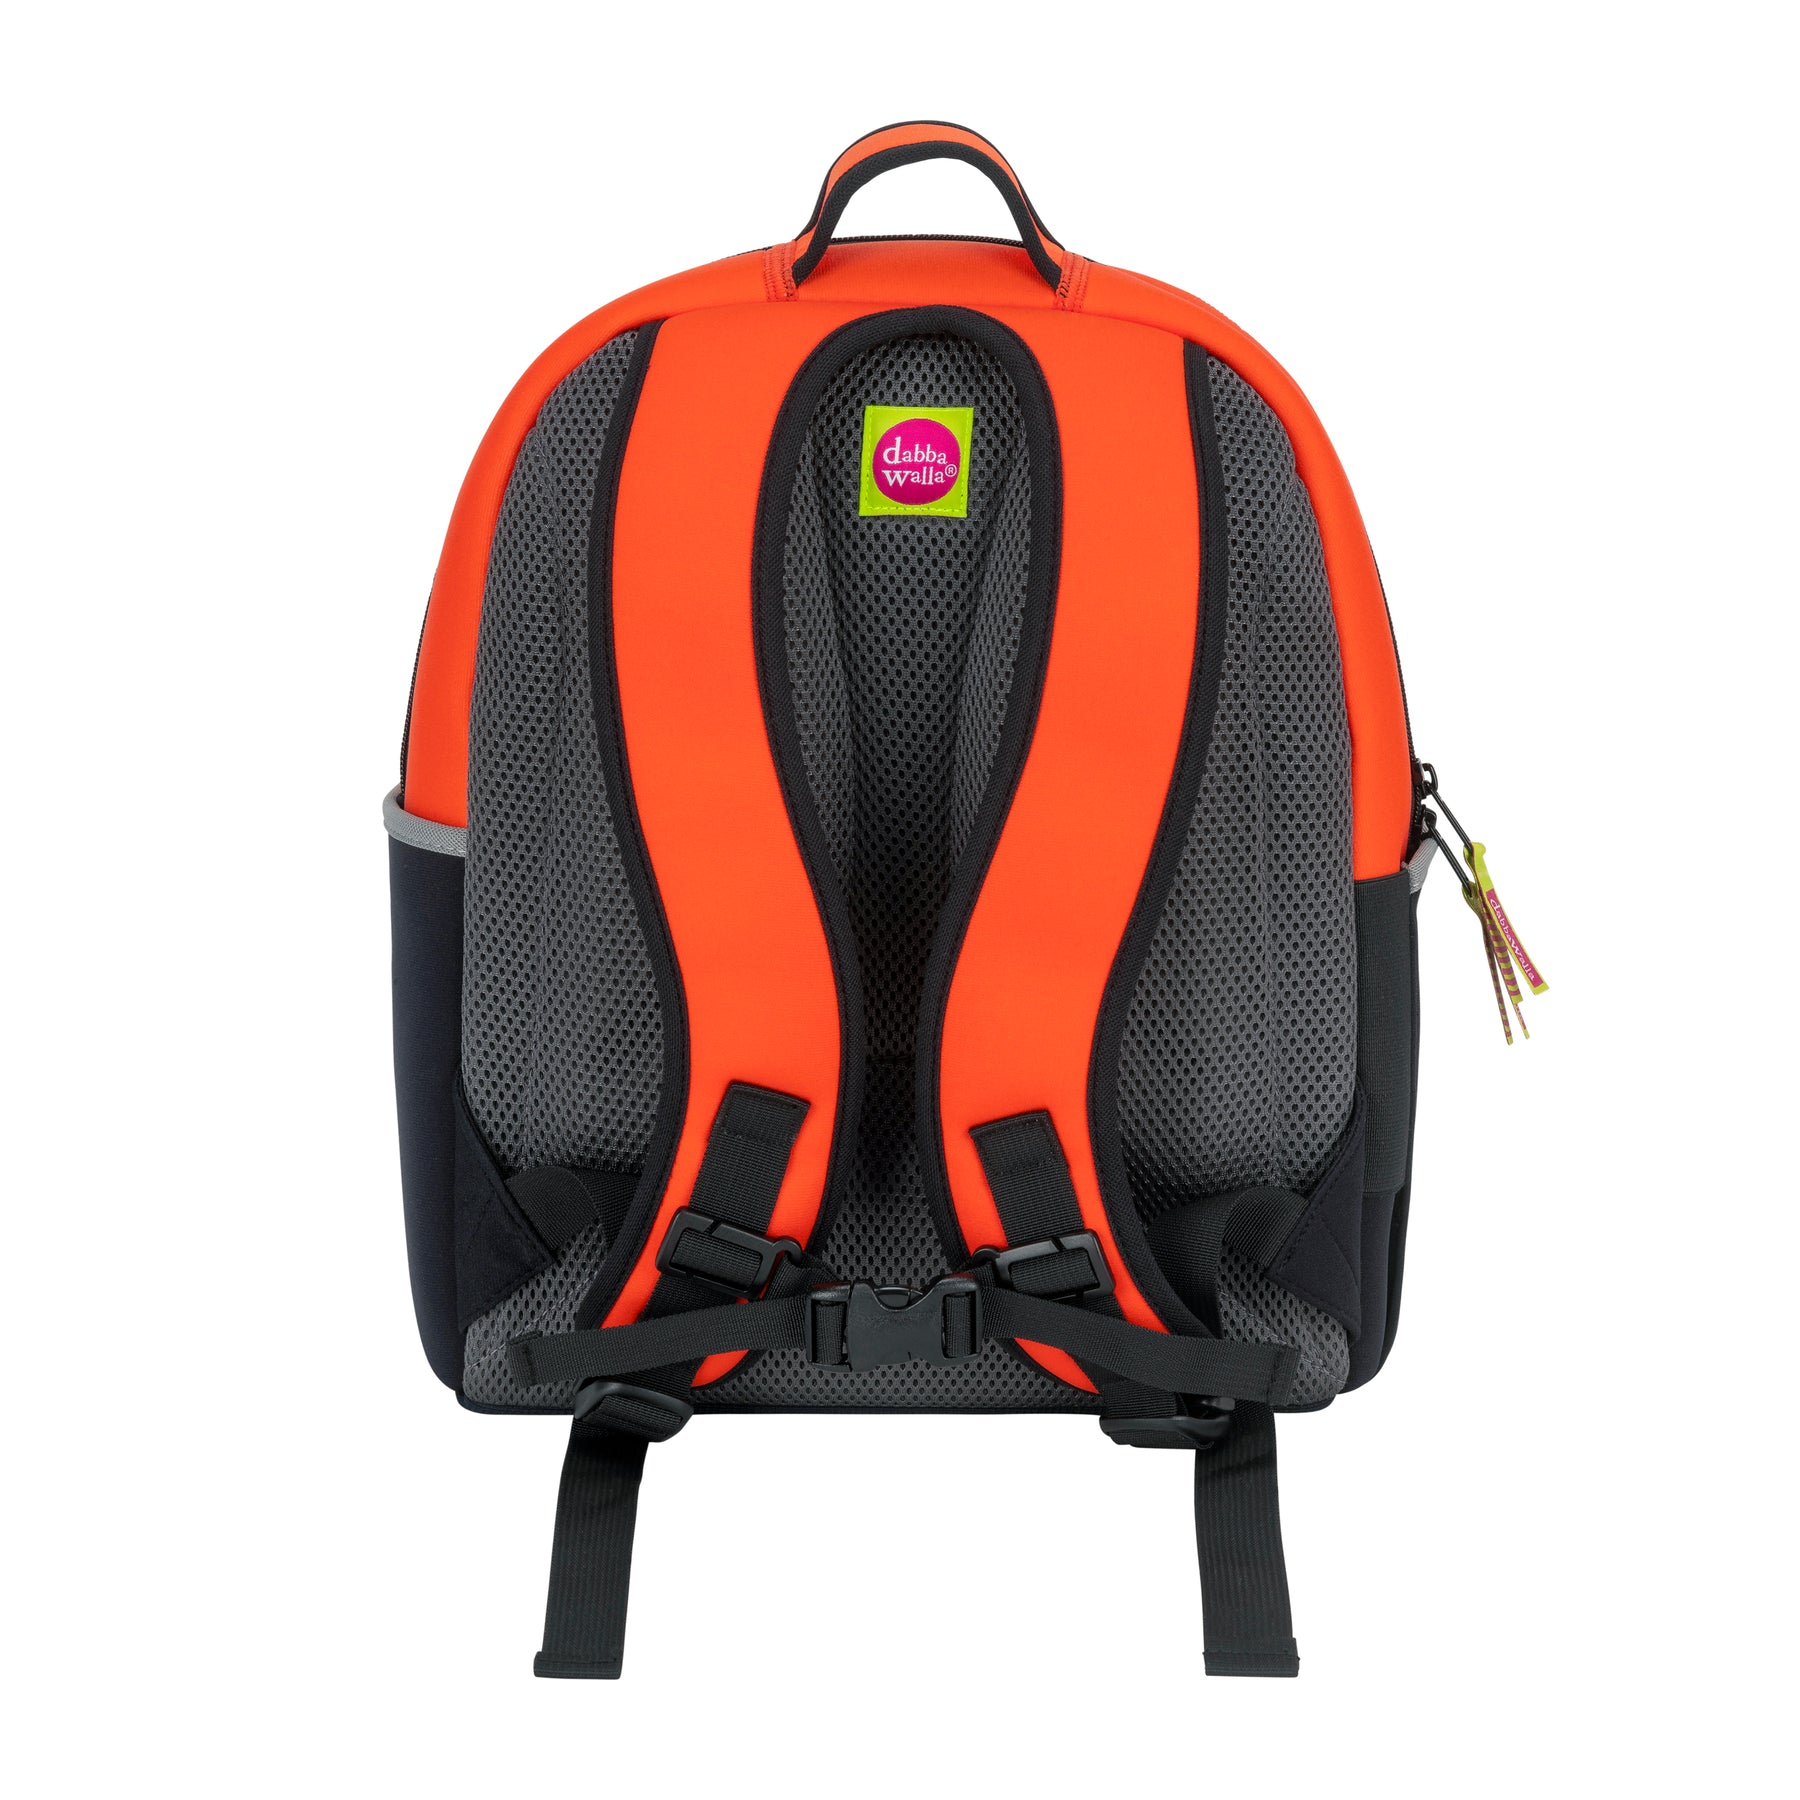  Timbktoo Car Shape Kids Backpack, Bag for Boys and Girls